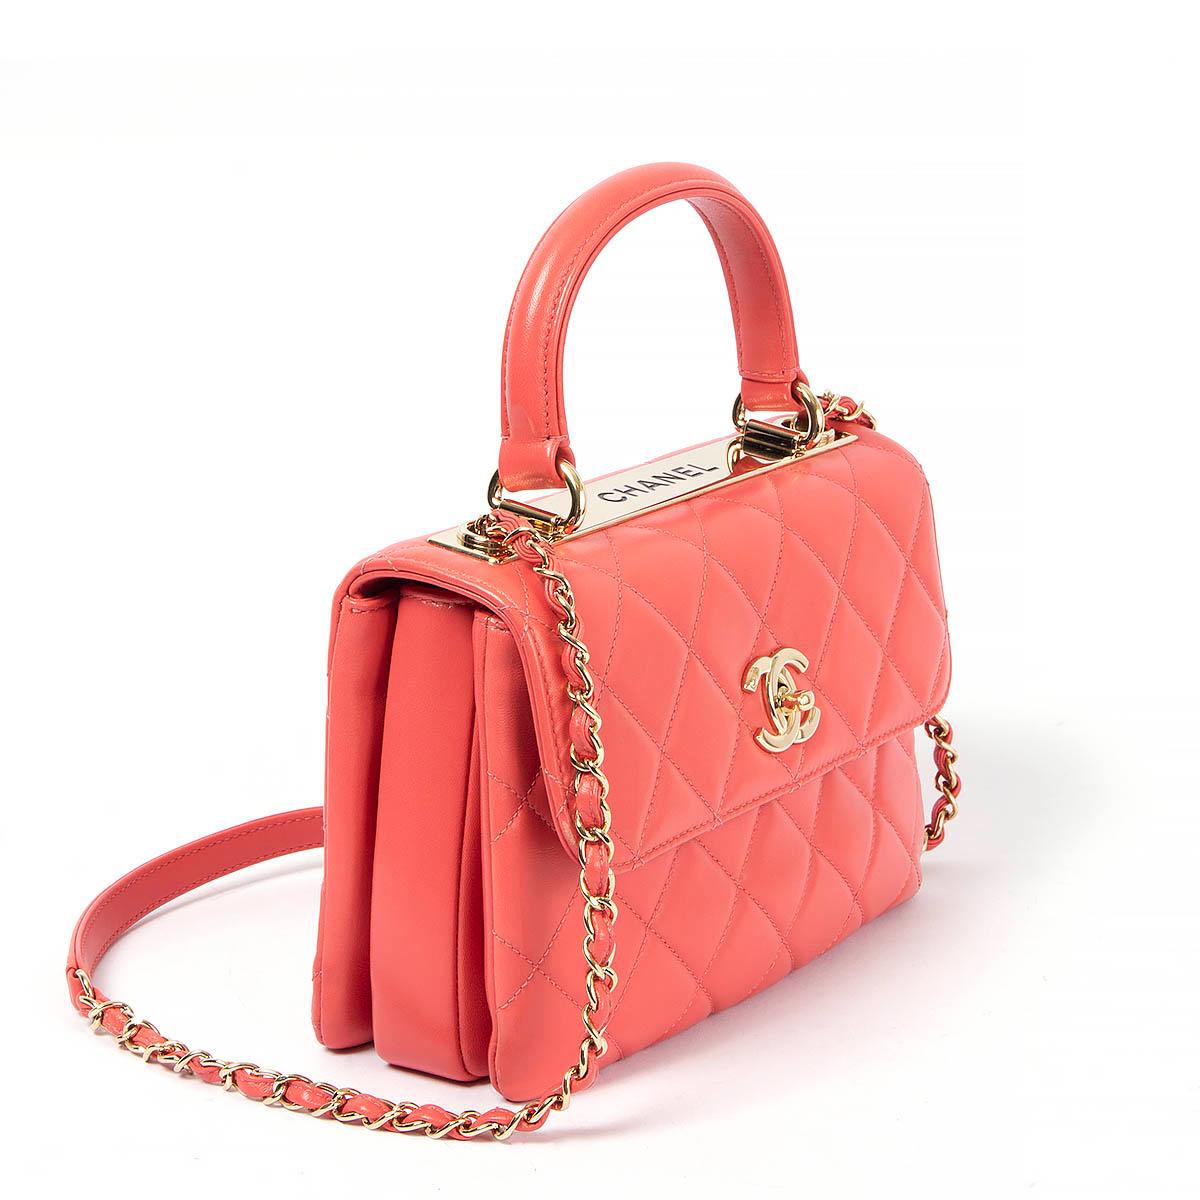 100% authentische Chanel Trendy CC Small Top Handle Bag aus korallenrotem Lammleder mit goldenen Beschlägen und Metallplatte mit Gravur 